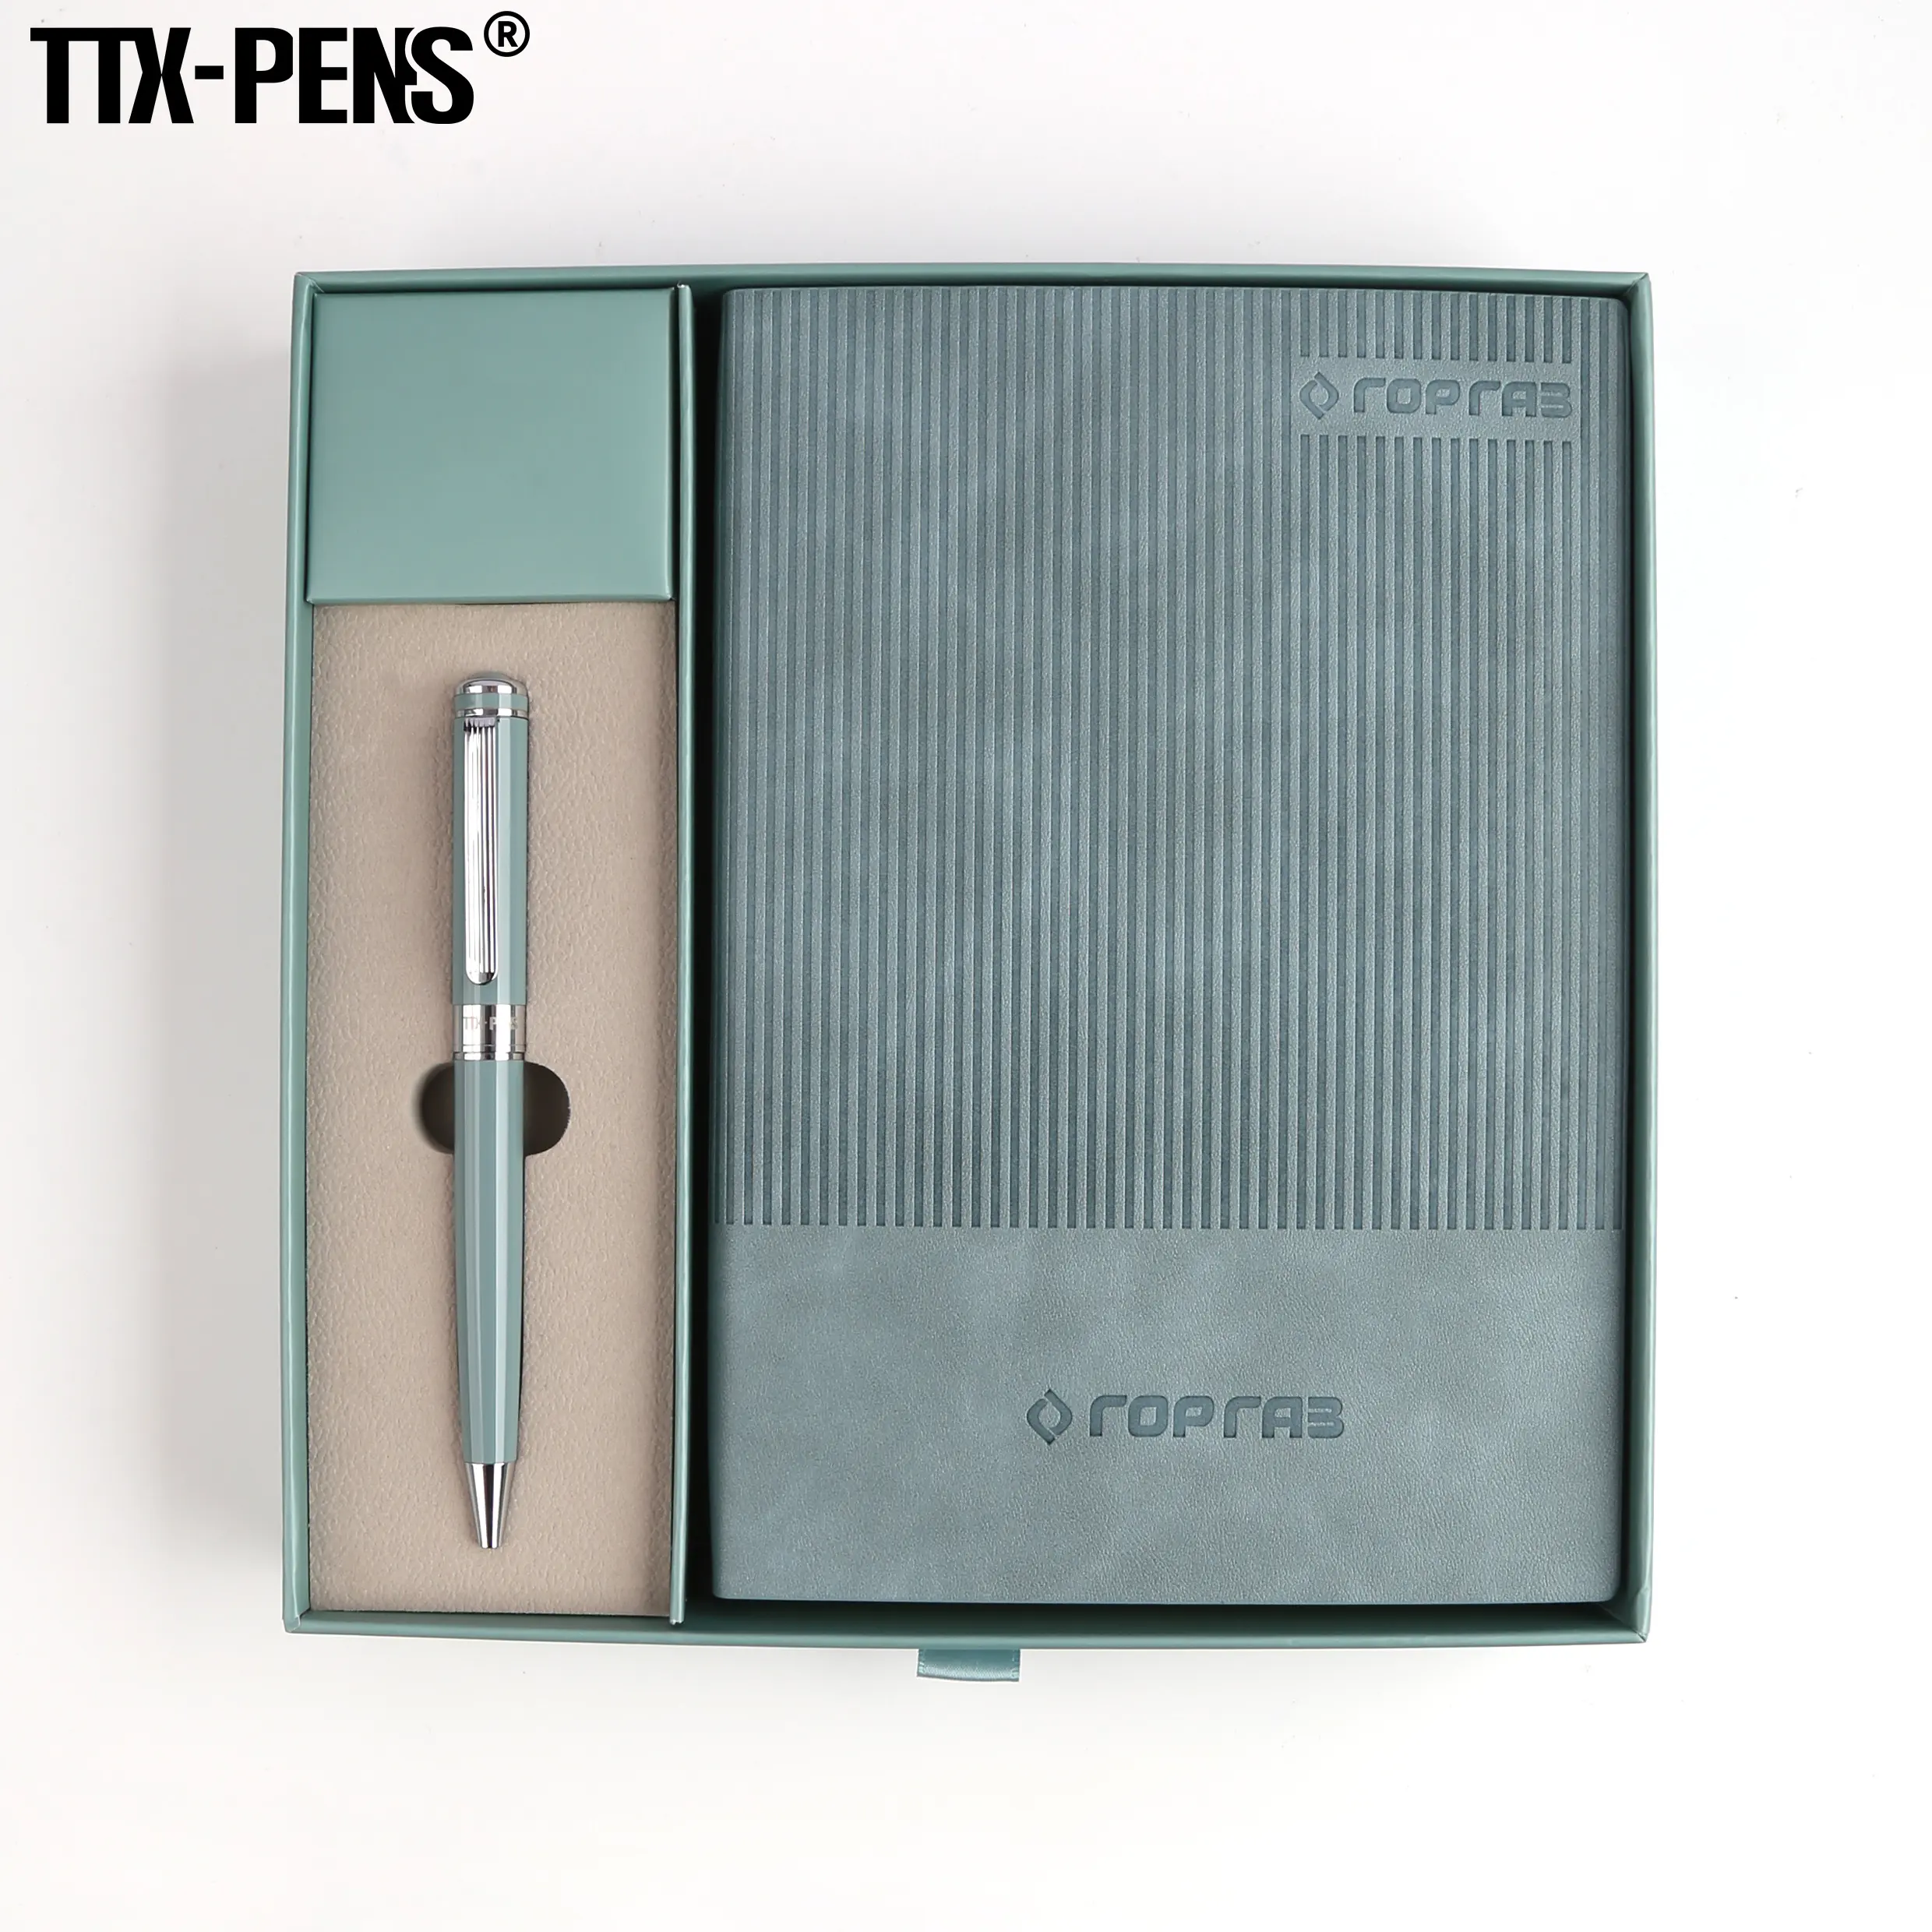 TTX 프로모션 럭셔리 선물 품목 노트북 비즈니스 선물 맞춤형 노트북 선물 세트 펜